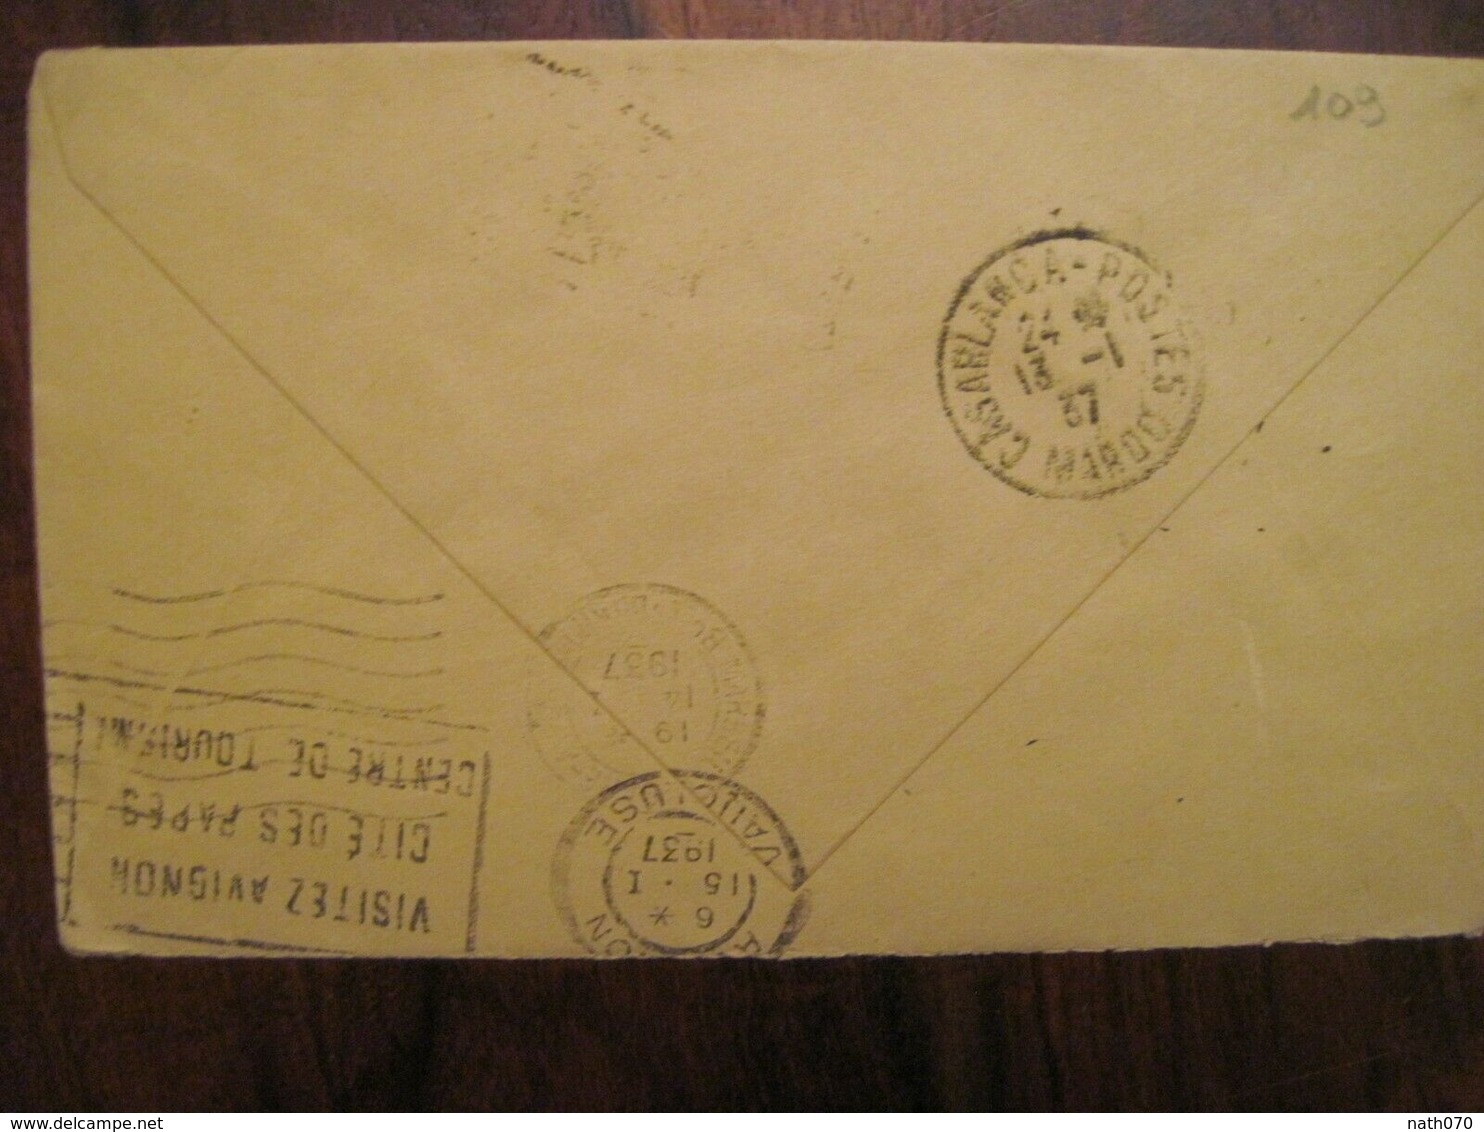 MAROC 1937 2e RTM France Marrakech GUELIZ Avignon Franchise FM Militaire Enveloppe Cover Colonie Air Mail Tirailleurs - Briefe U. Dokumente